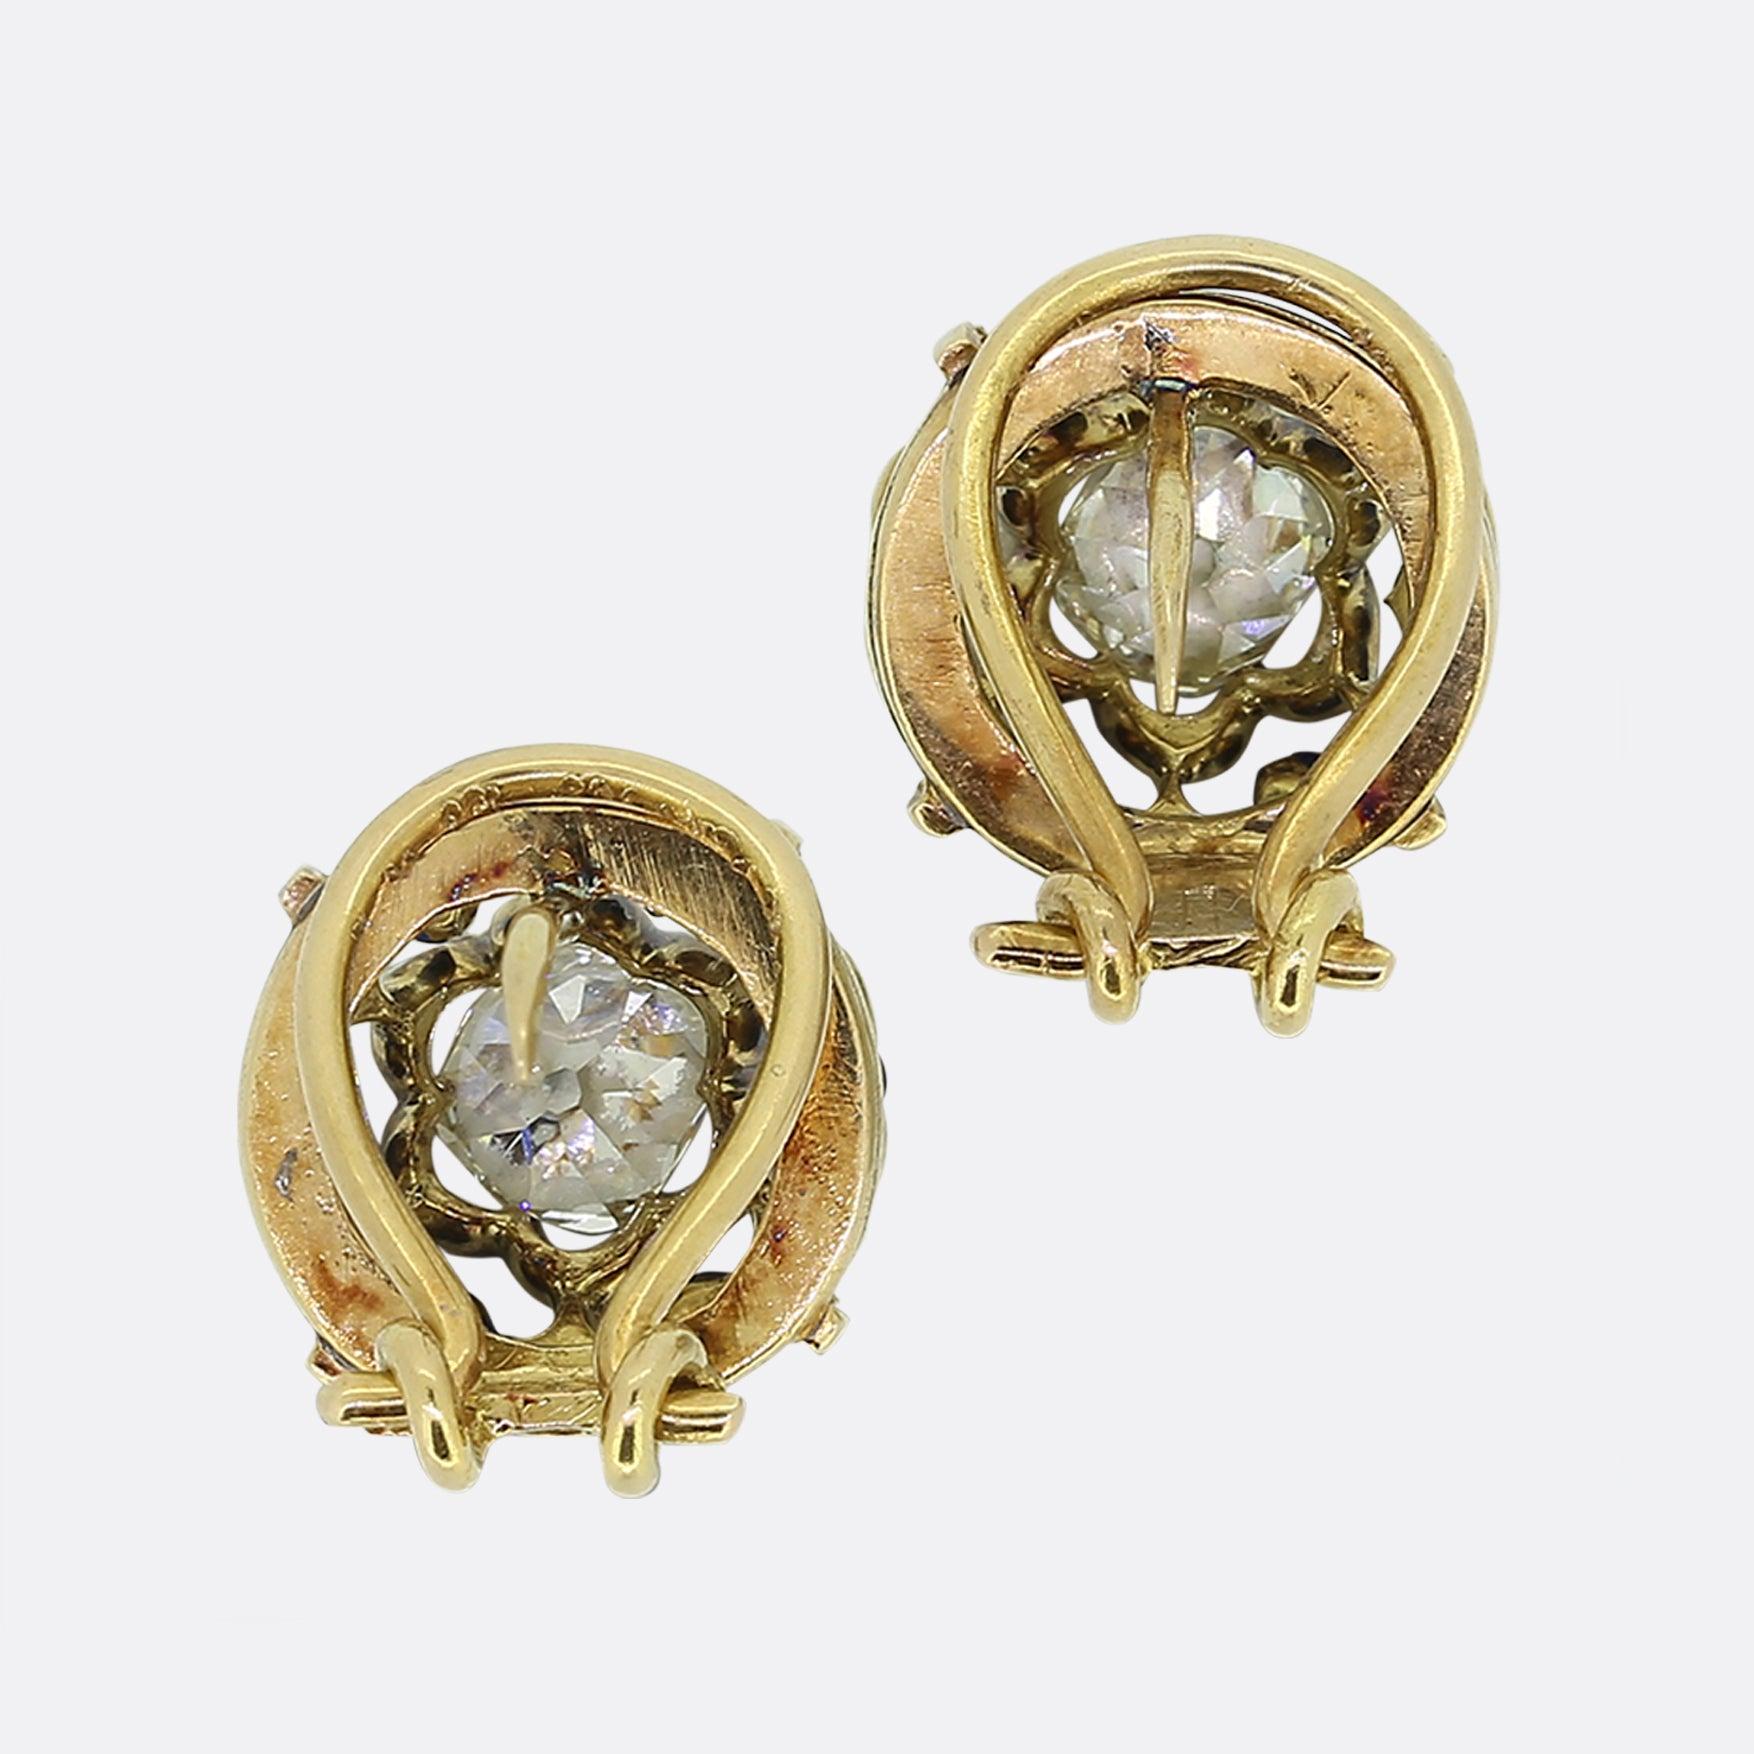 Nous avons ici une ravissante paire de boucles d'oreilles en diamant datant de l'époque victorienne. Chaque pièce ancienne est identique et présente un double cadre ouvert et ondulé qui entoure un impressionnant diamant massif taillé à l'ancienne.